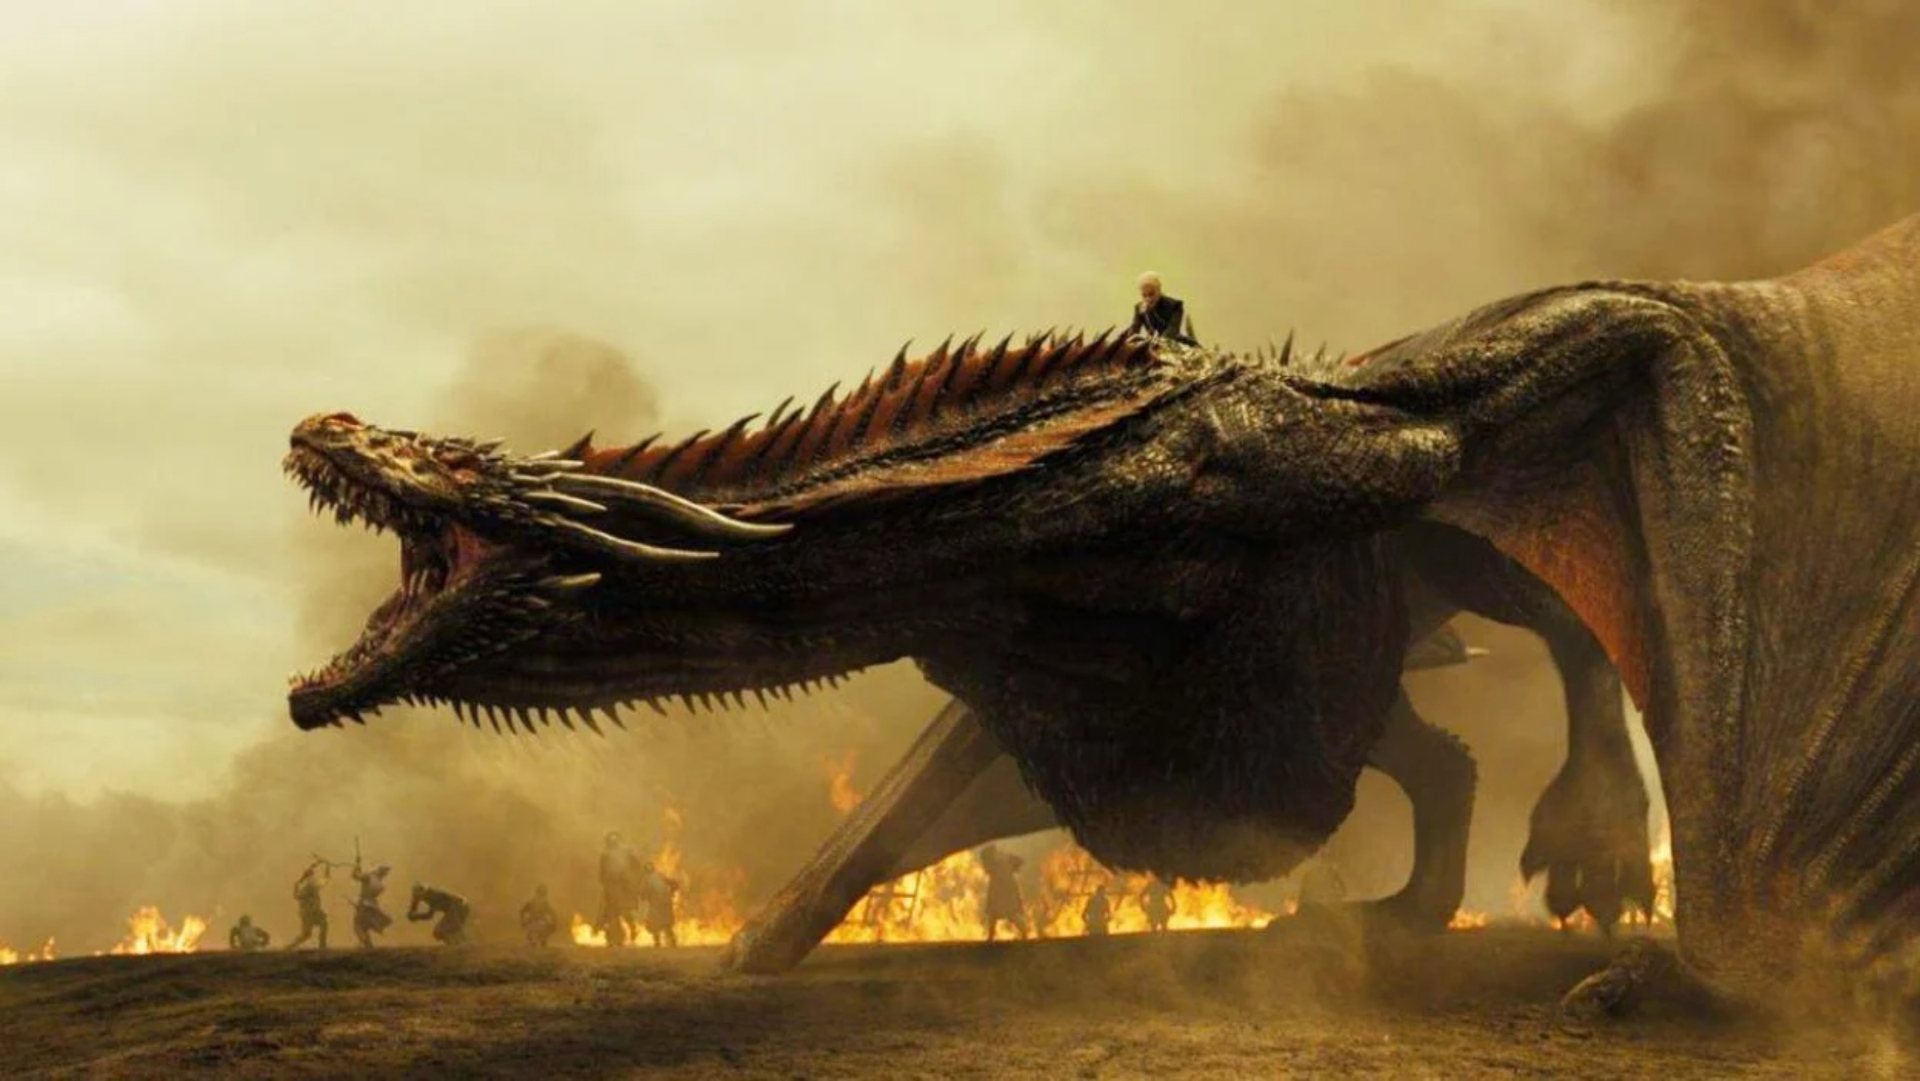 Drogon rugindo com Daenerys montando nele e fogos queimando ao fundo.